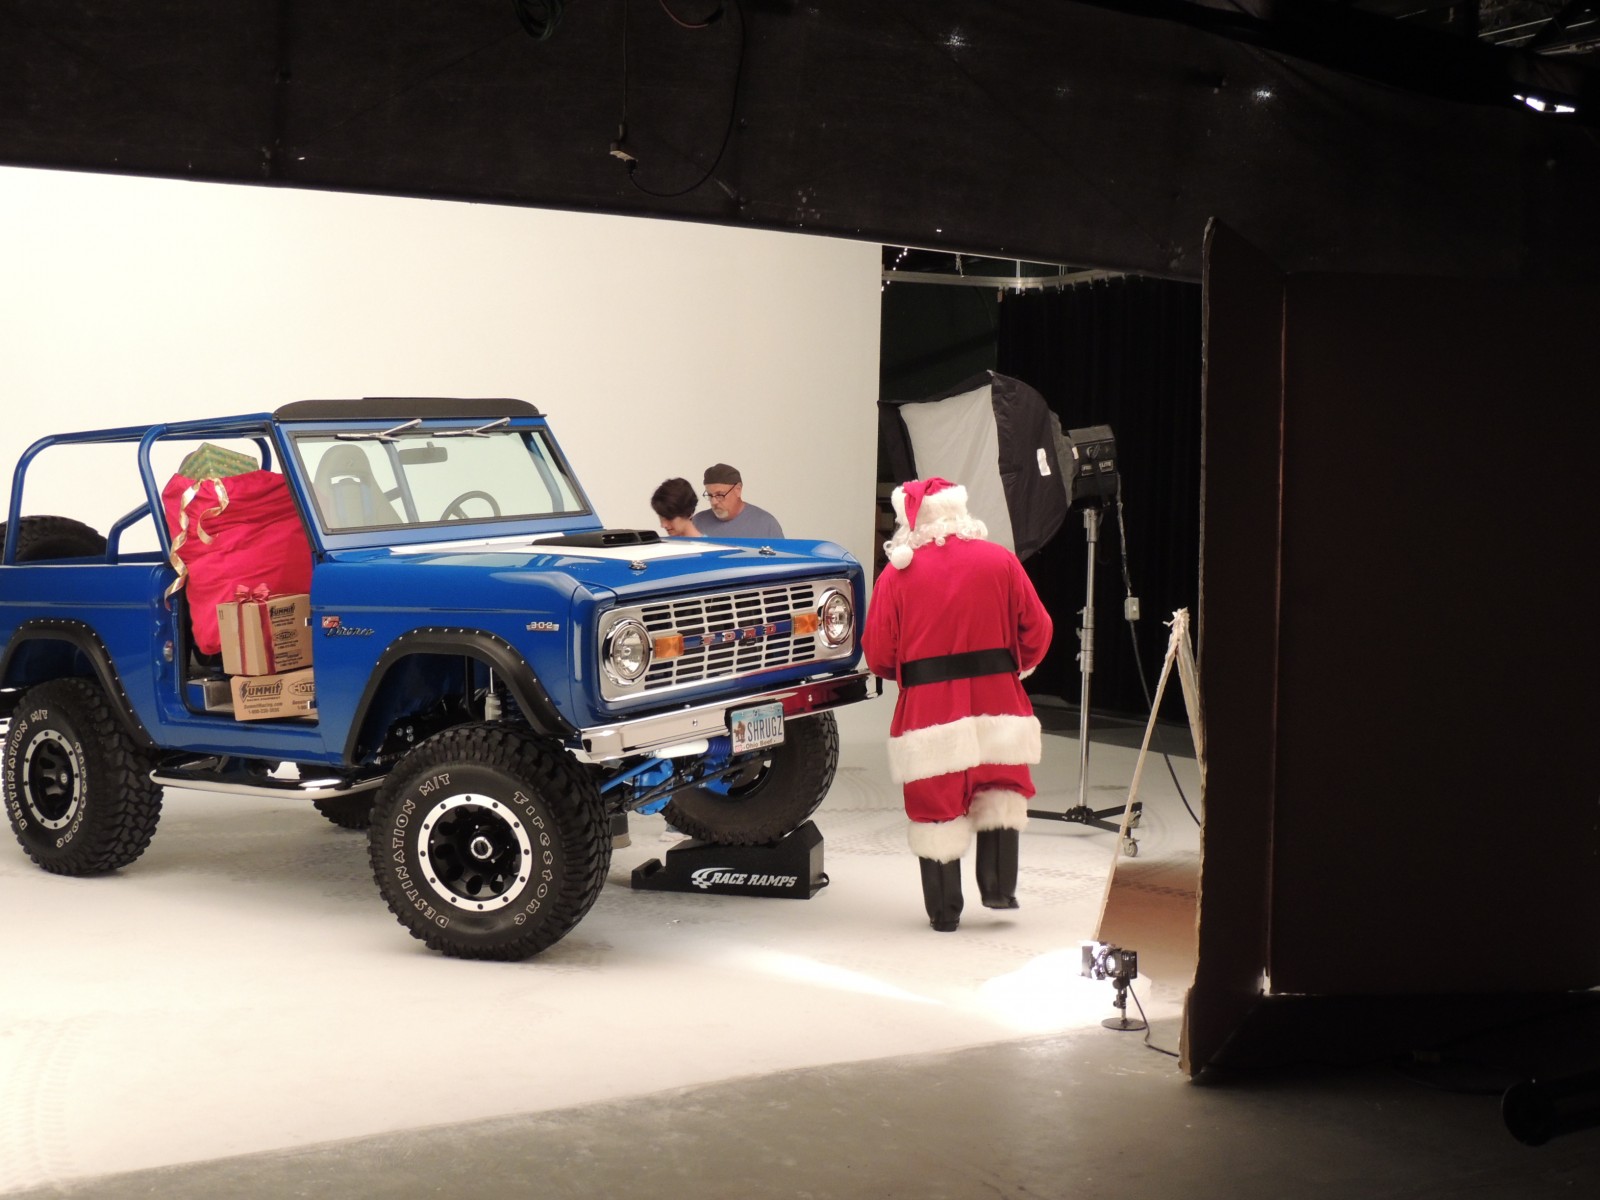 ford, Bronco, 4x4, Suv, Santa, Christmas Wallpapers HD / Desktop and